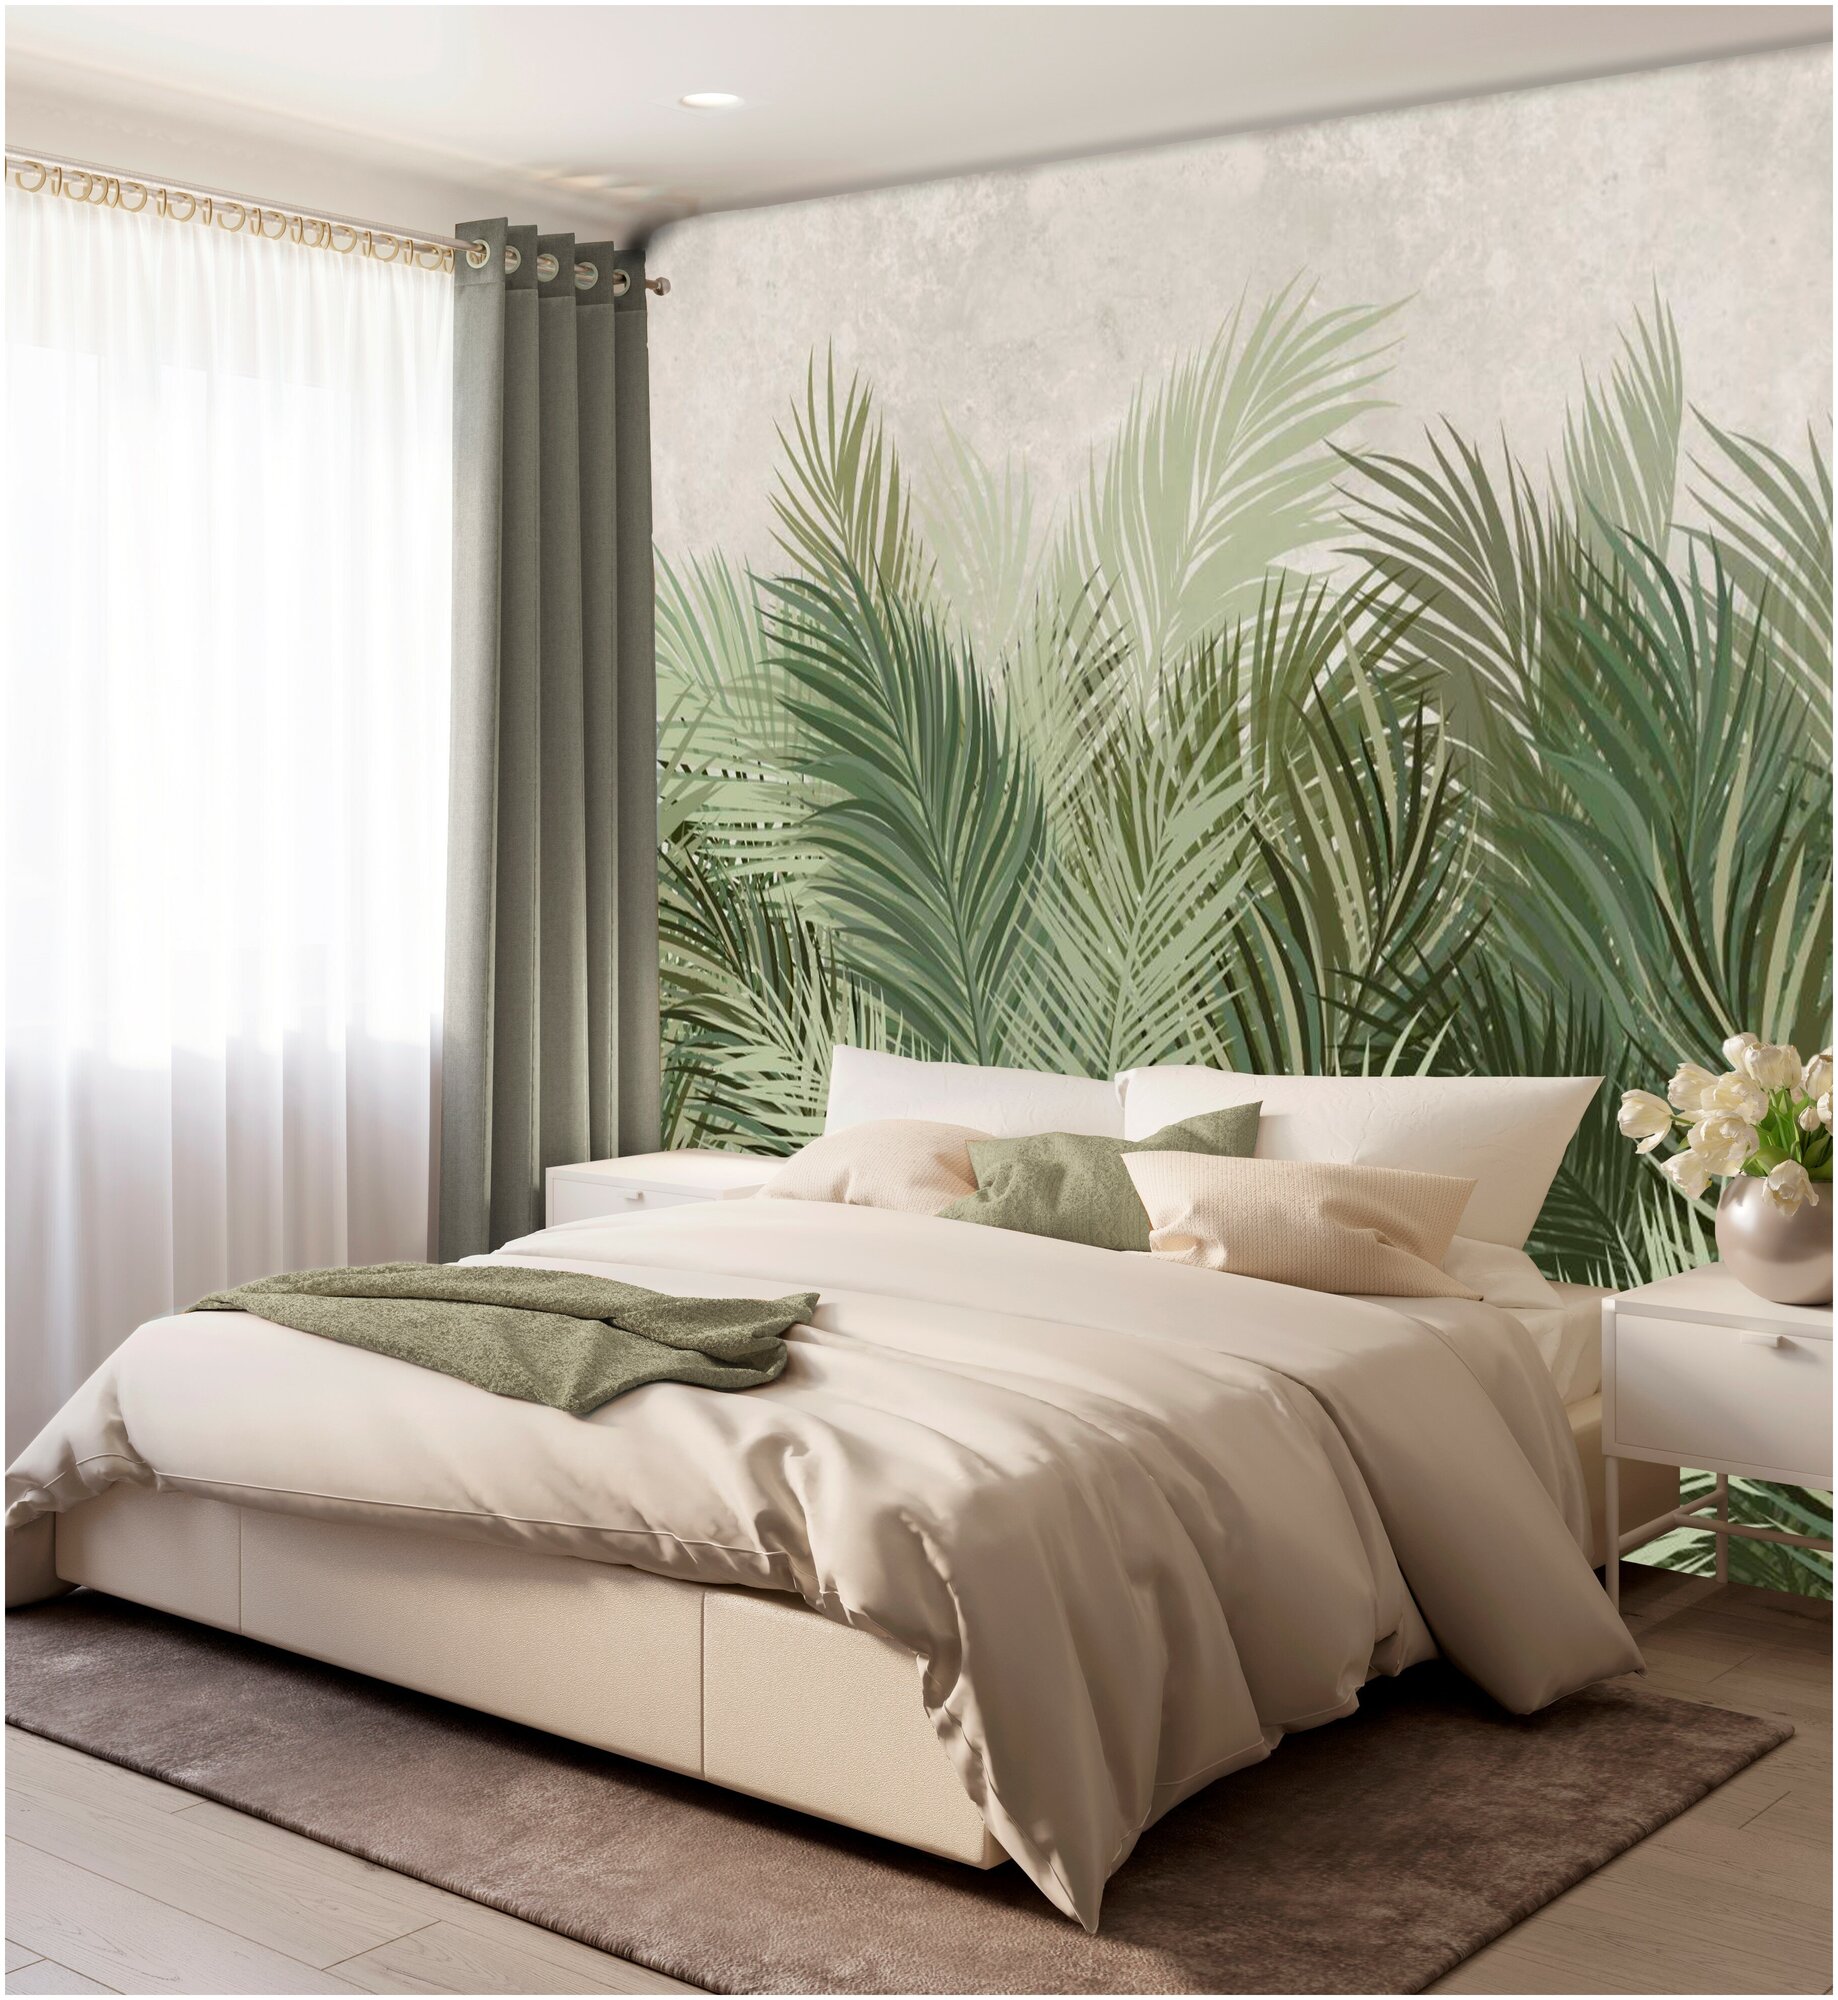 Фотообои флизелиновые с виниловым покрытием VEROL "Перья зелено-серые", 300х283 см, моющиеся обои на стену, декор для дома